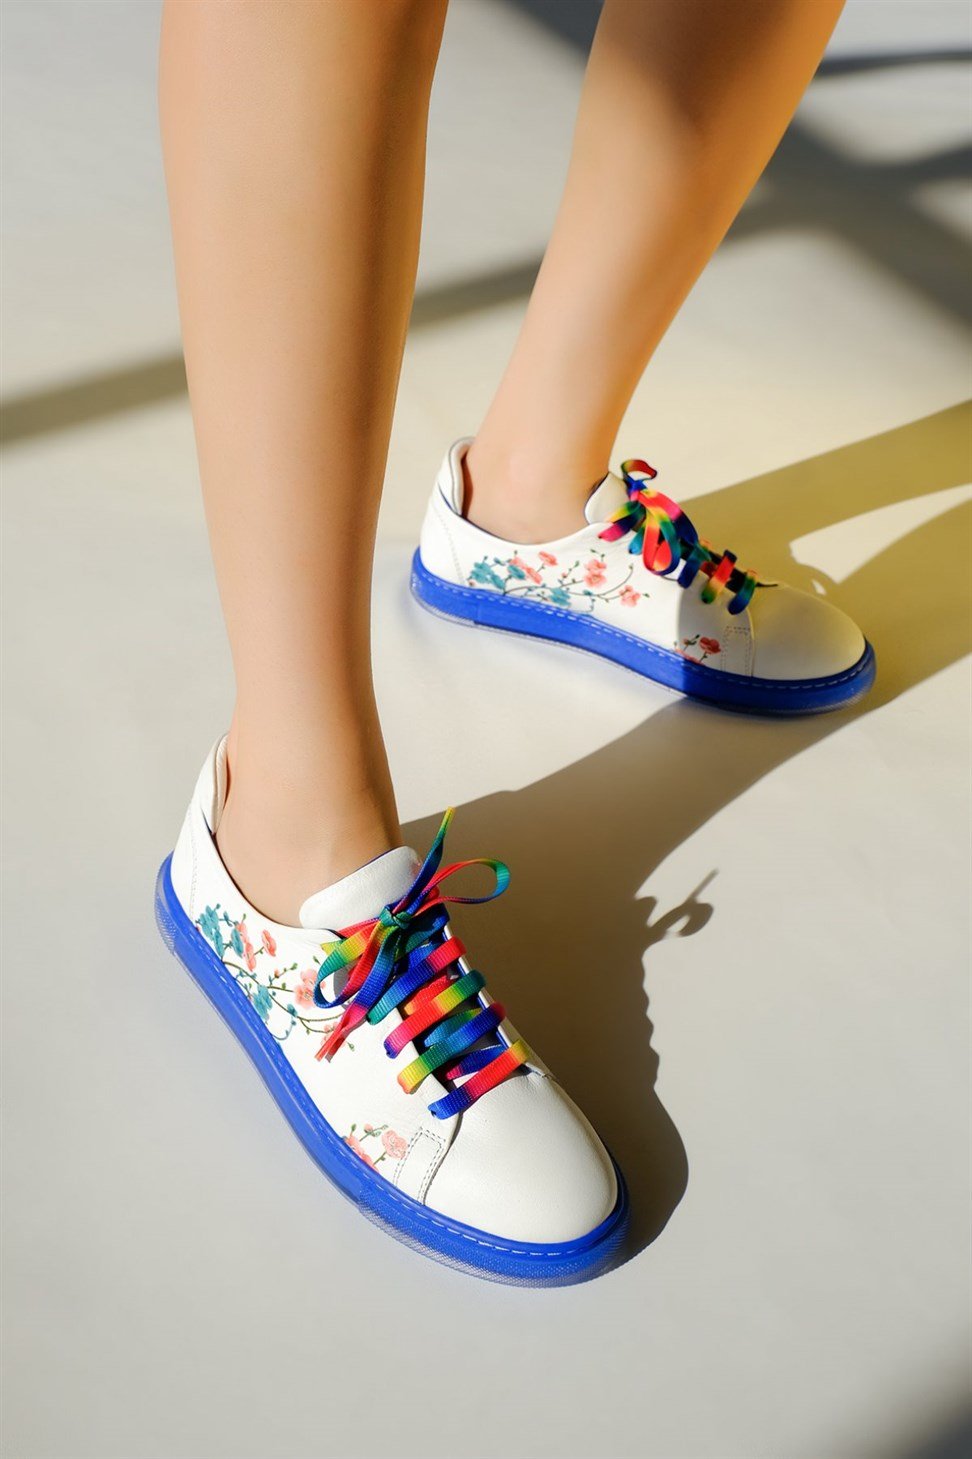 Kadın Hakiki Deri Mavi Tabanlı Çiçek Desenli ve Renkli Bağcıklı Spor  Ayakkabı BEYAZ/MAVİ